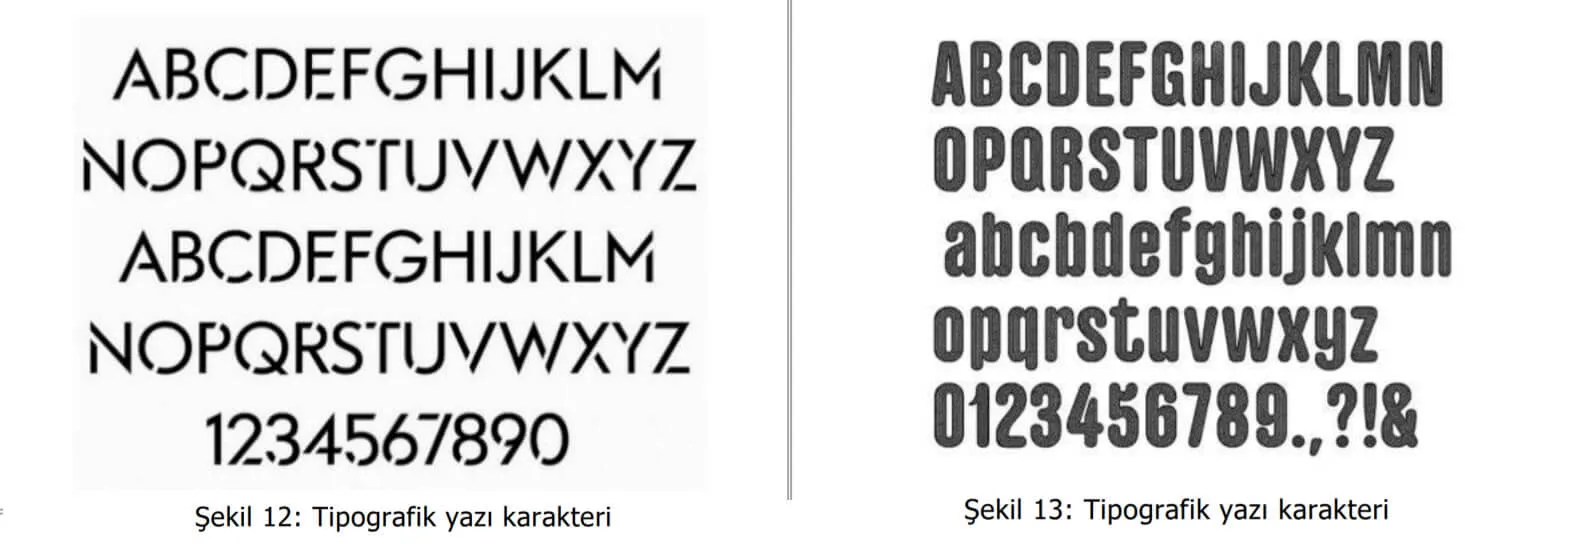 tipografik yazı karakter örnekleri-aliağa patent